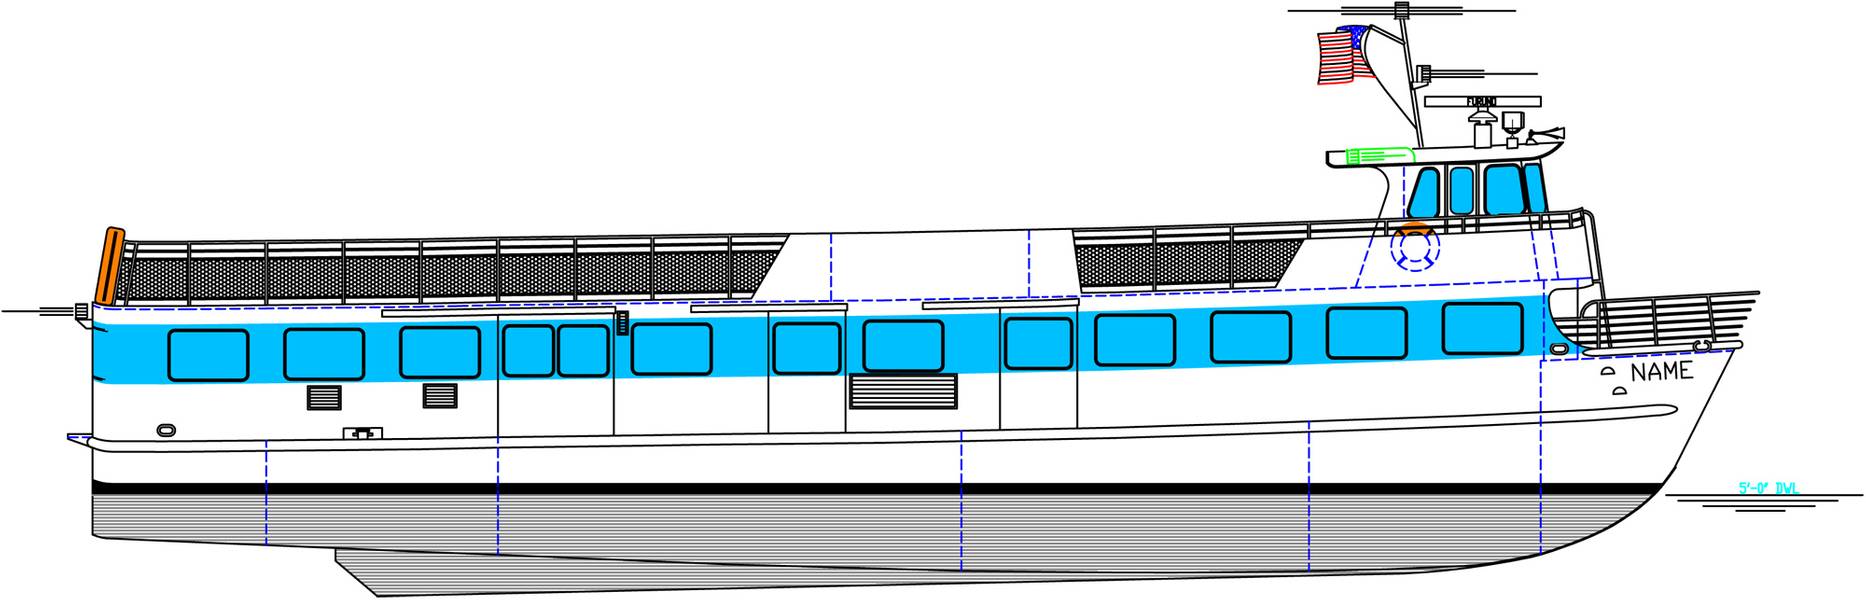 Το πλοίο Blount των 85 ποδιών θα κατασκευαστεί για τα πλοία Fire Island Ferries. (Εικόνα: Σκάφη Blount)